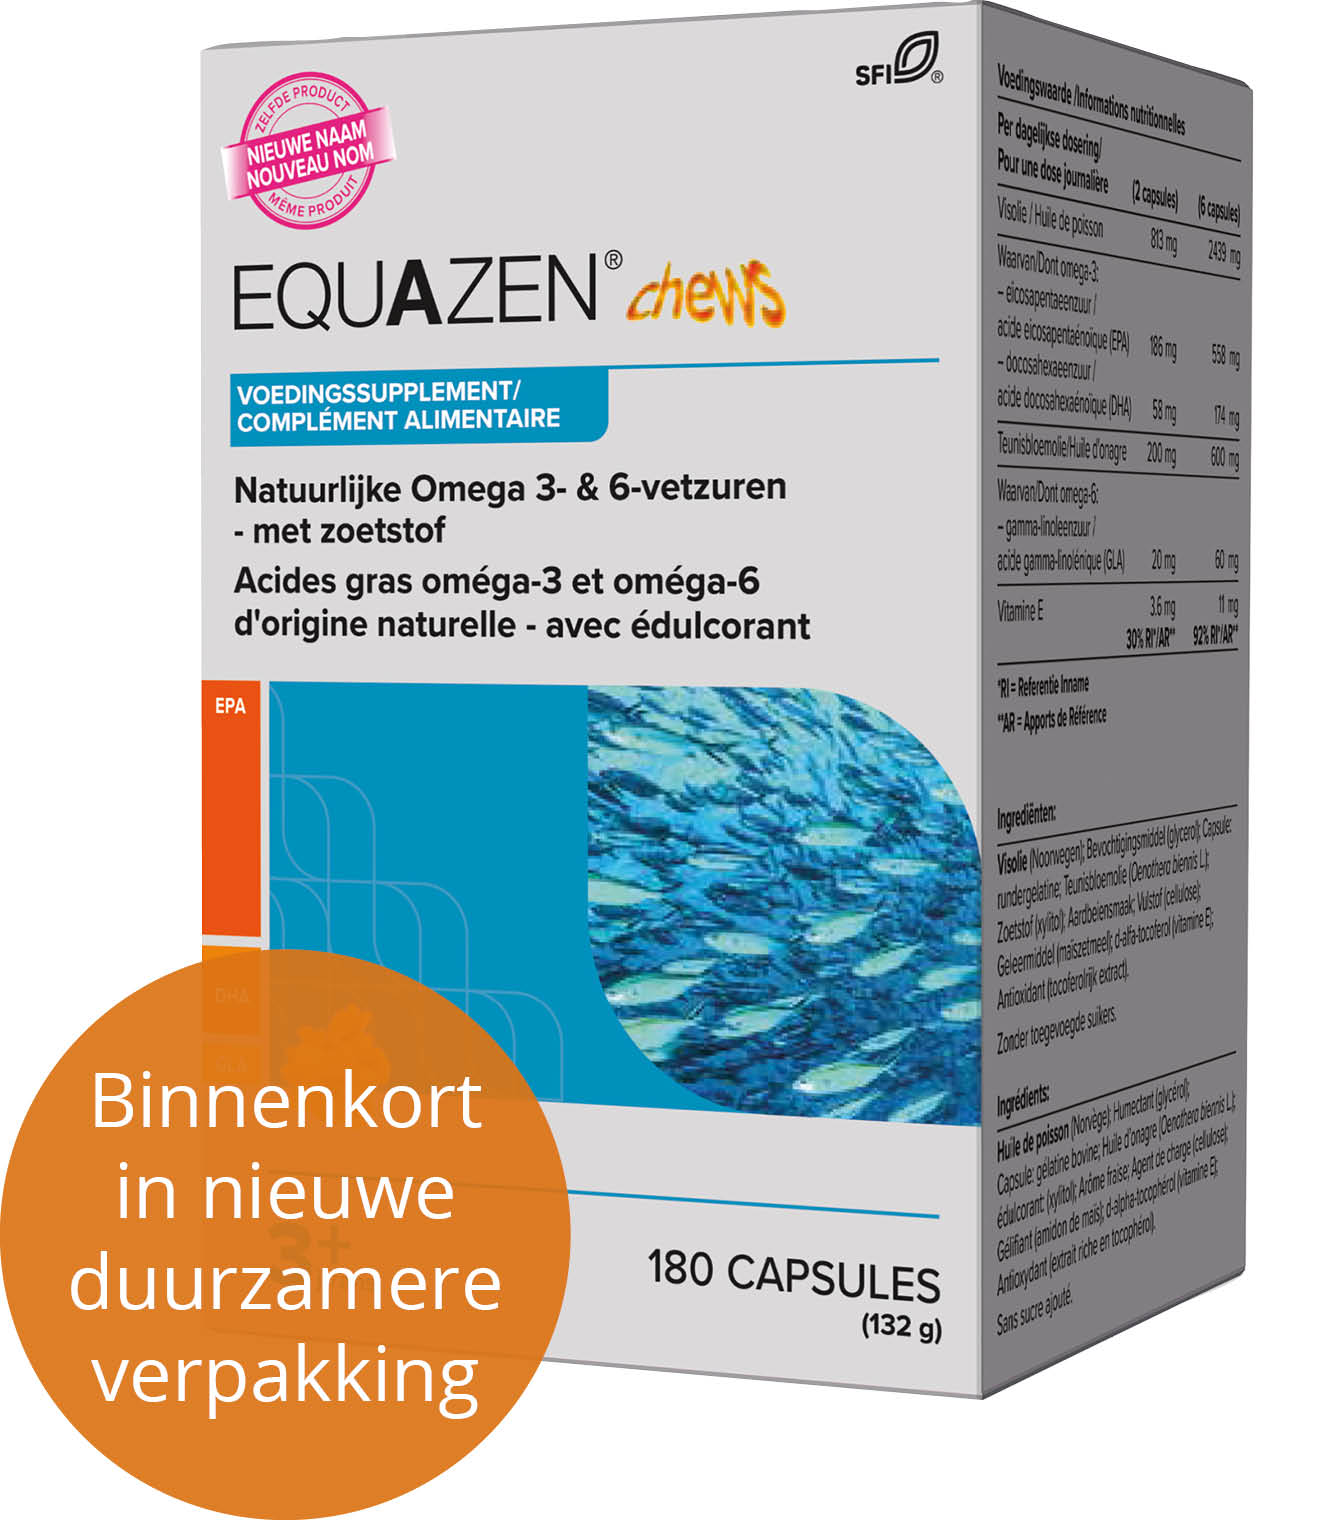 Equazen chews - 180 kaucapsules met aardbeiensmaak - de slimme formule met EPA, DHA, GLA - binnenkort nieuwe verpakking